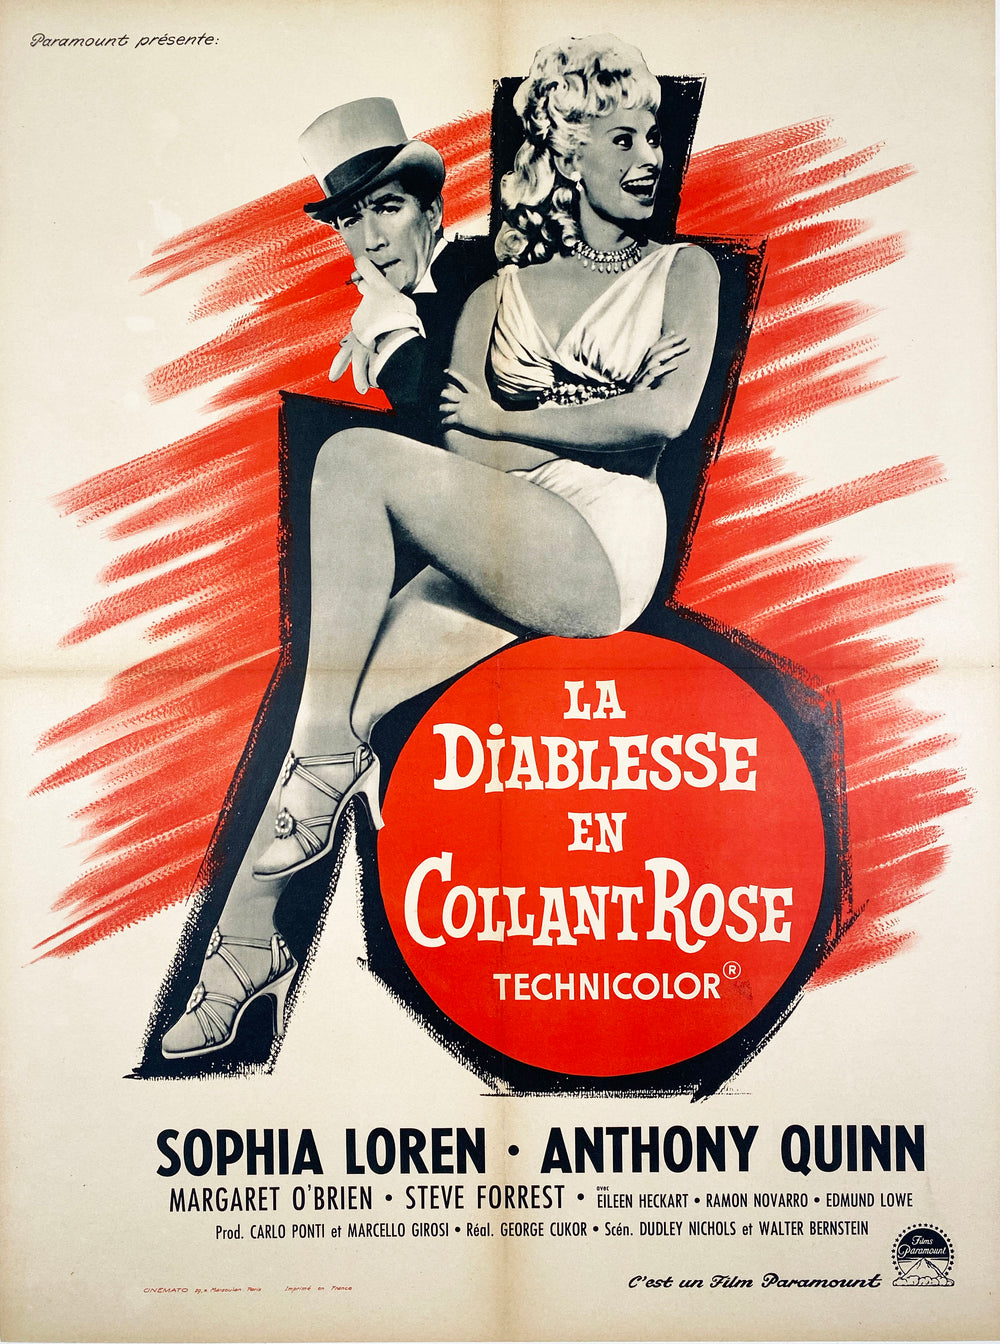 Heller in Pink Tights (La Diablesse en Collant Rose) - Vintage French Film poster - 1960